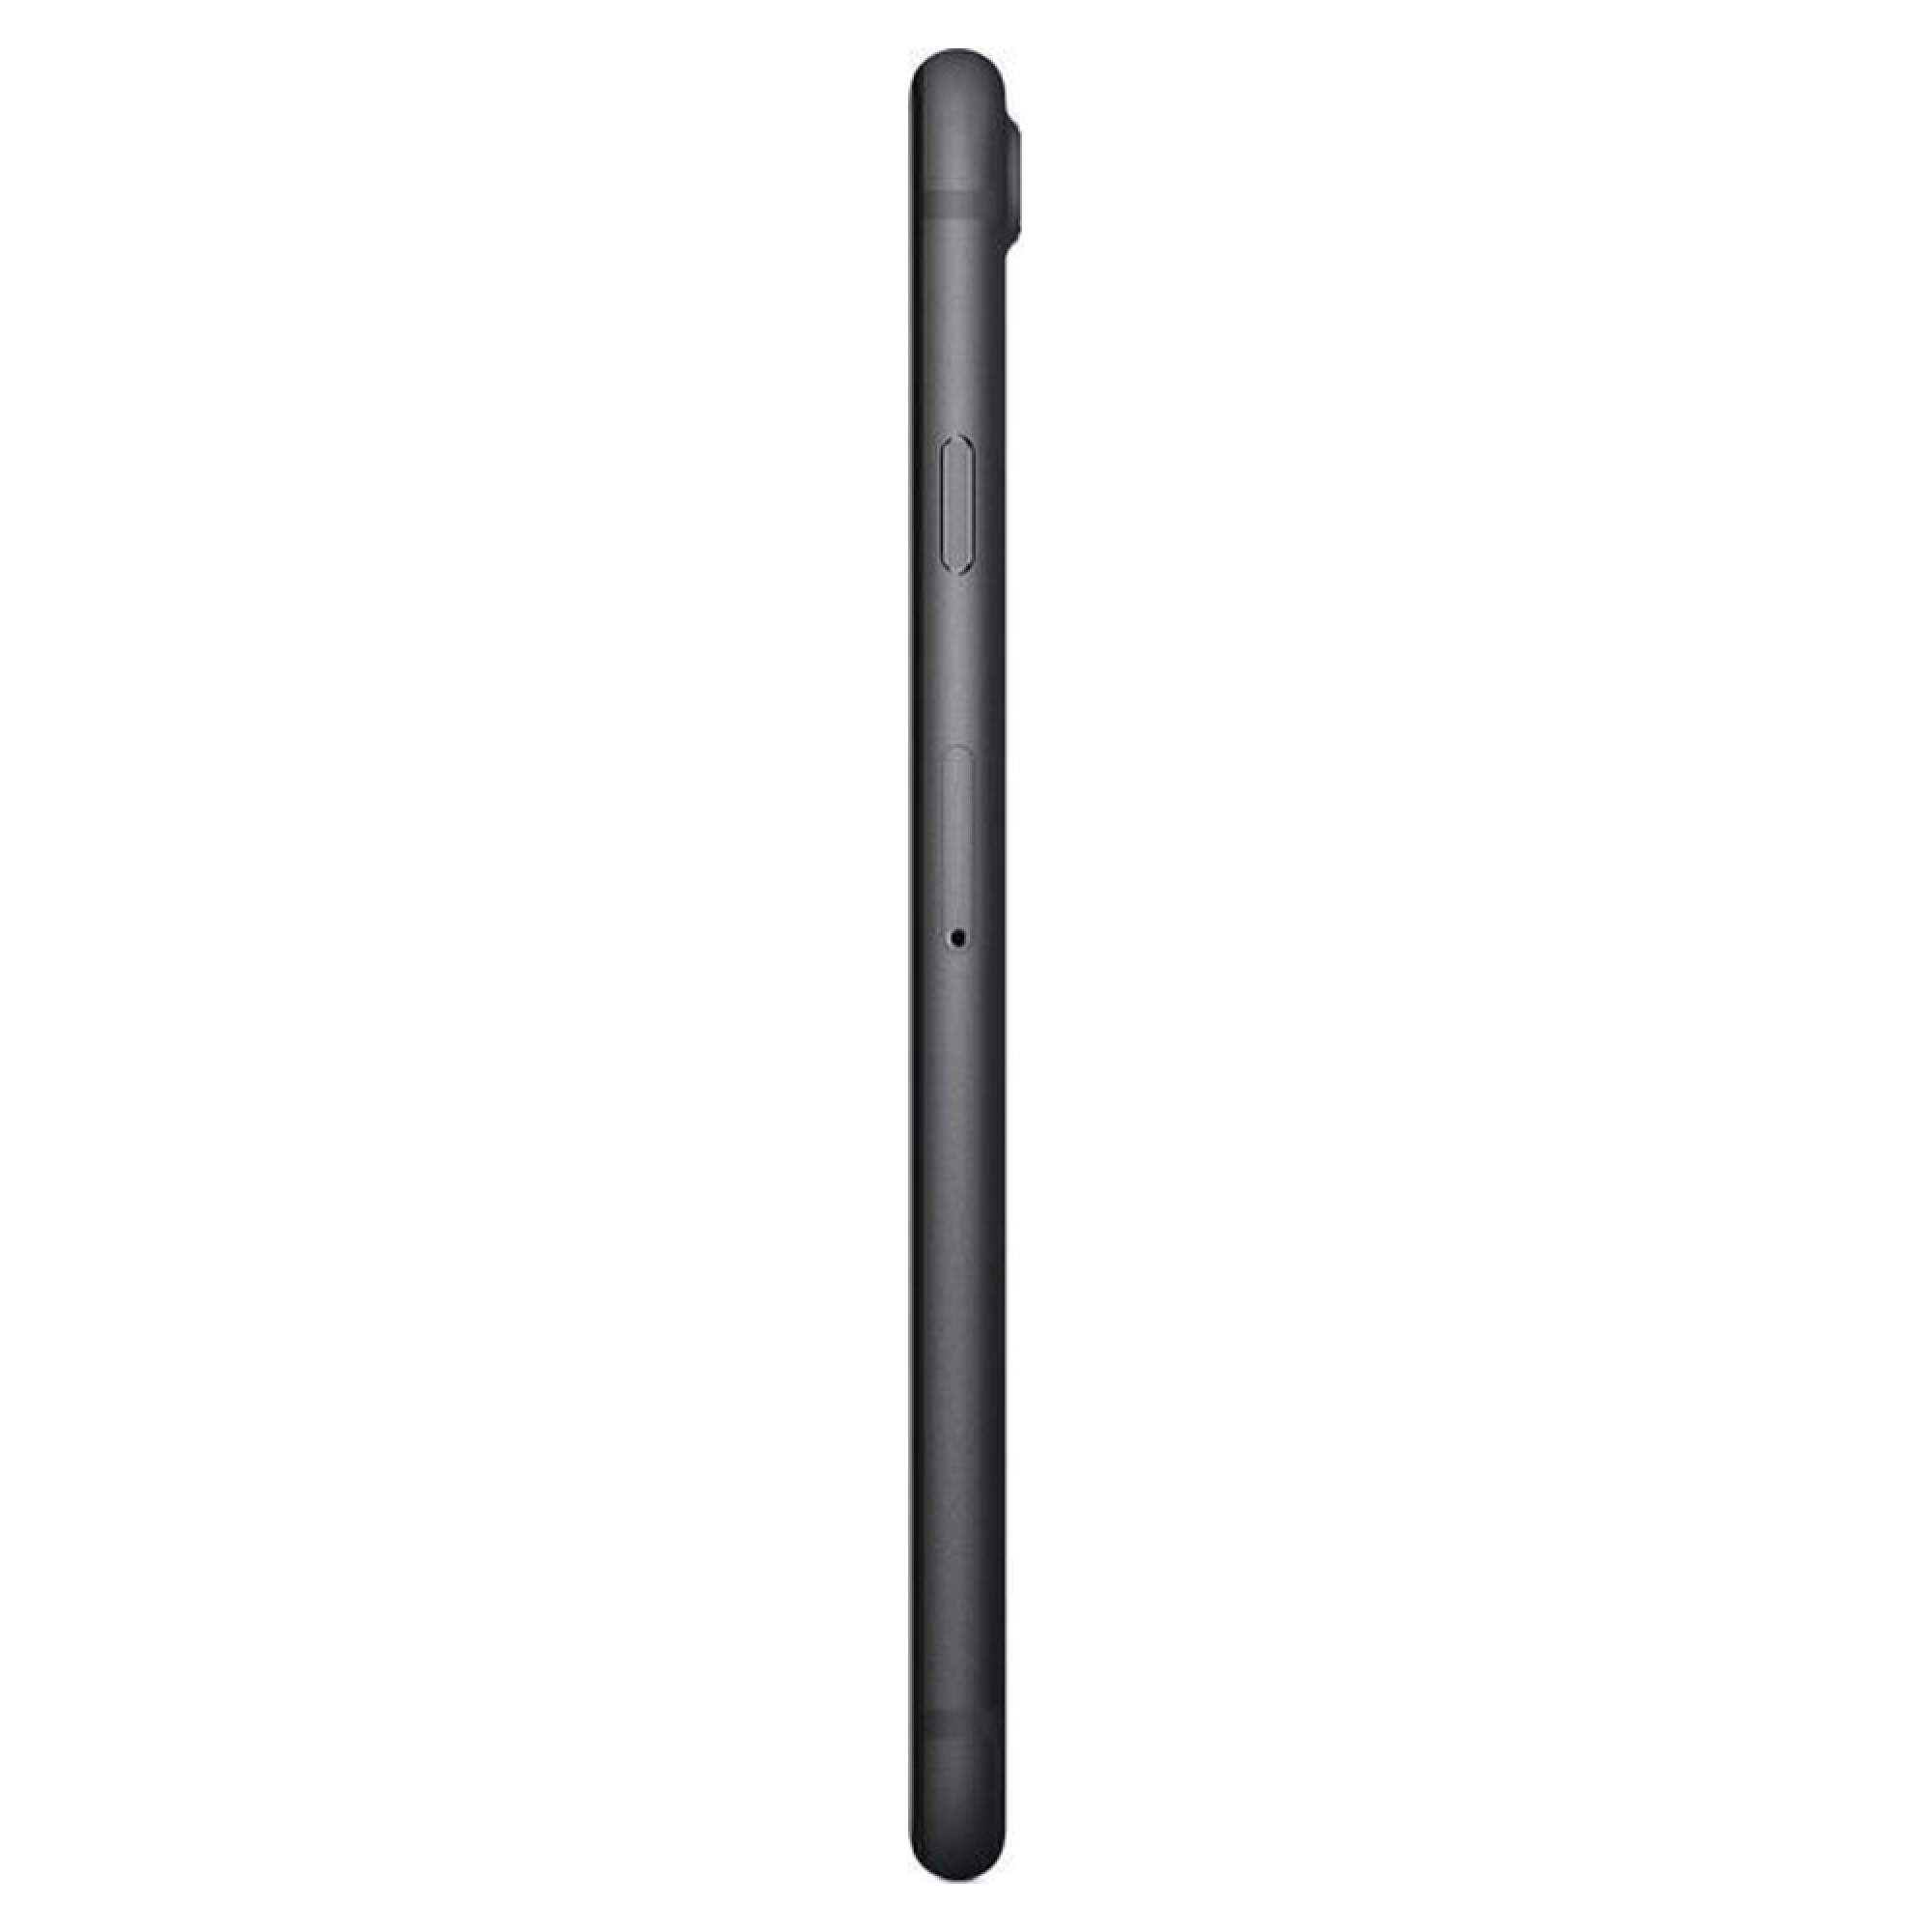 Смартфон Apple iPhone 7 128GB Black восстановленный (FN922RU/A)